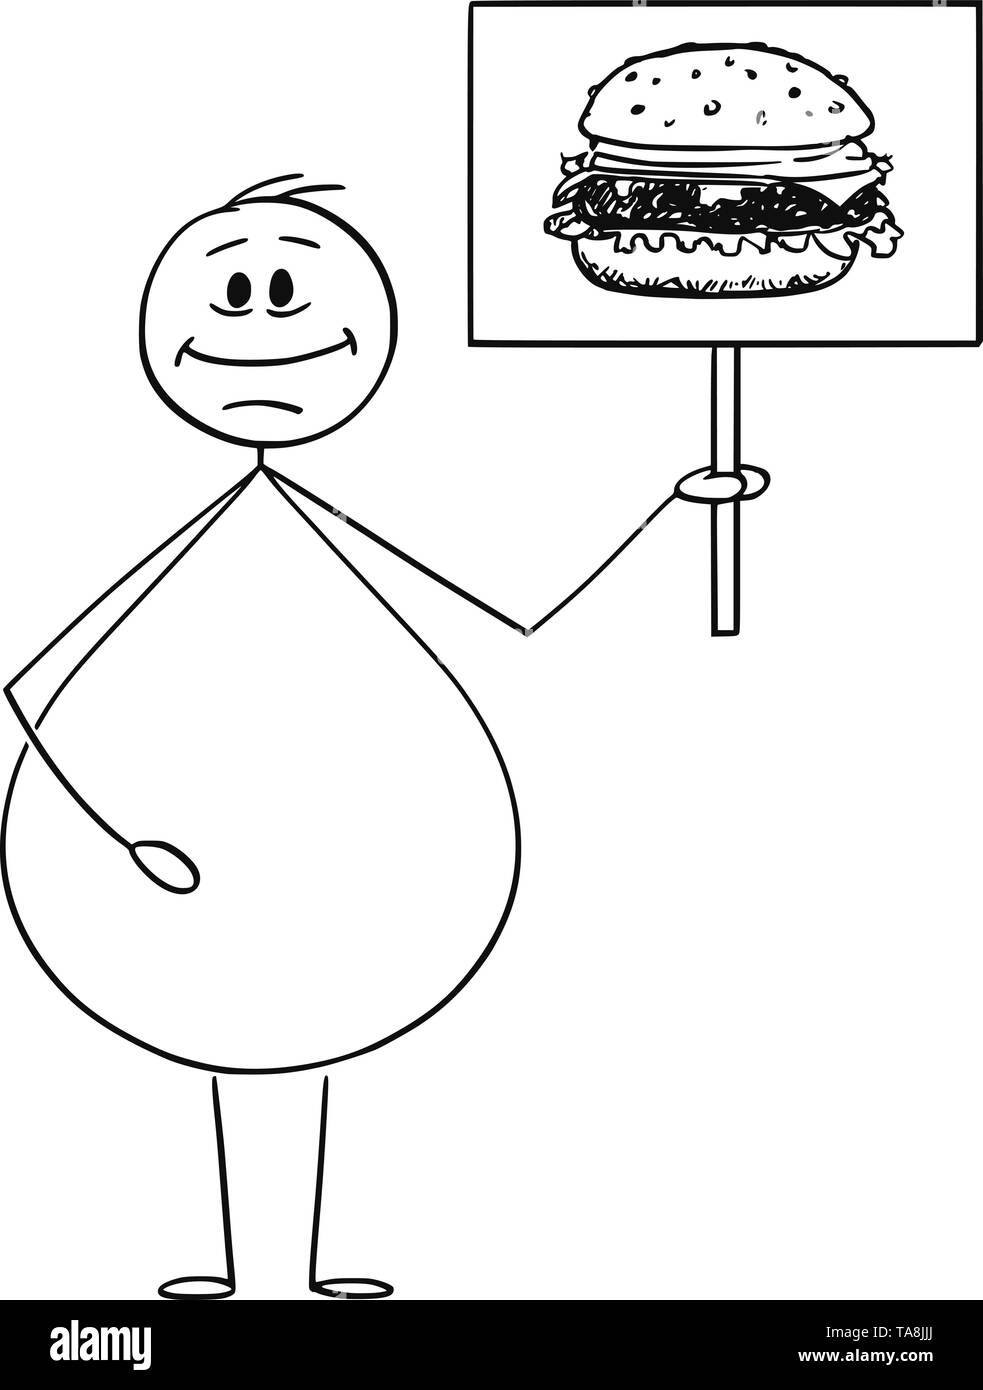 Vektor cartoon Strichmännchen Zeichnen konzeptionelle Darstellung der lächelnden übergewichtige oder fettleibige Menschen halten Schild mit Hamburger oder Burger Bild. Junk food Konzept. Stock Vektor